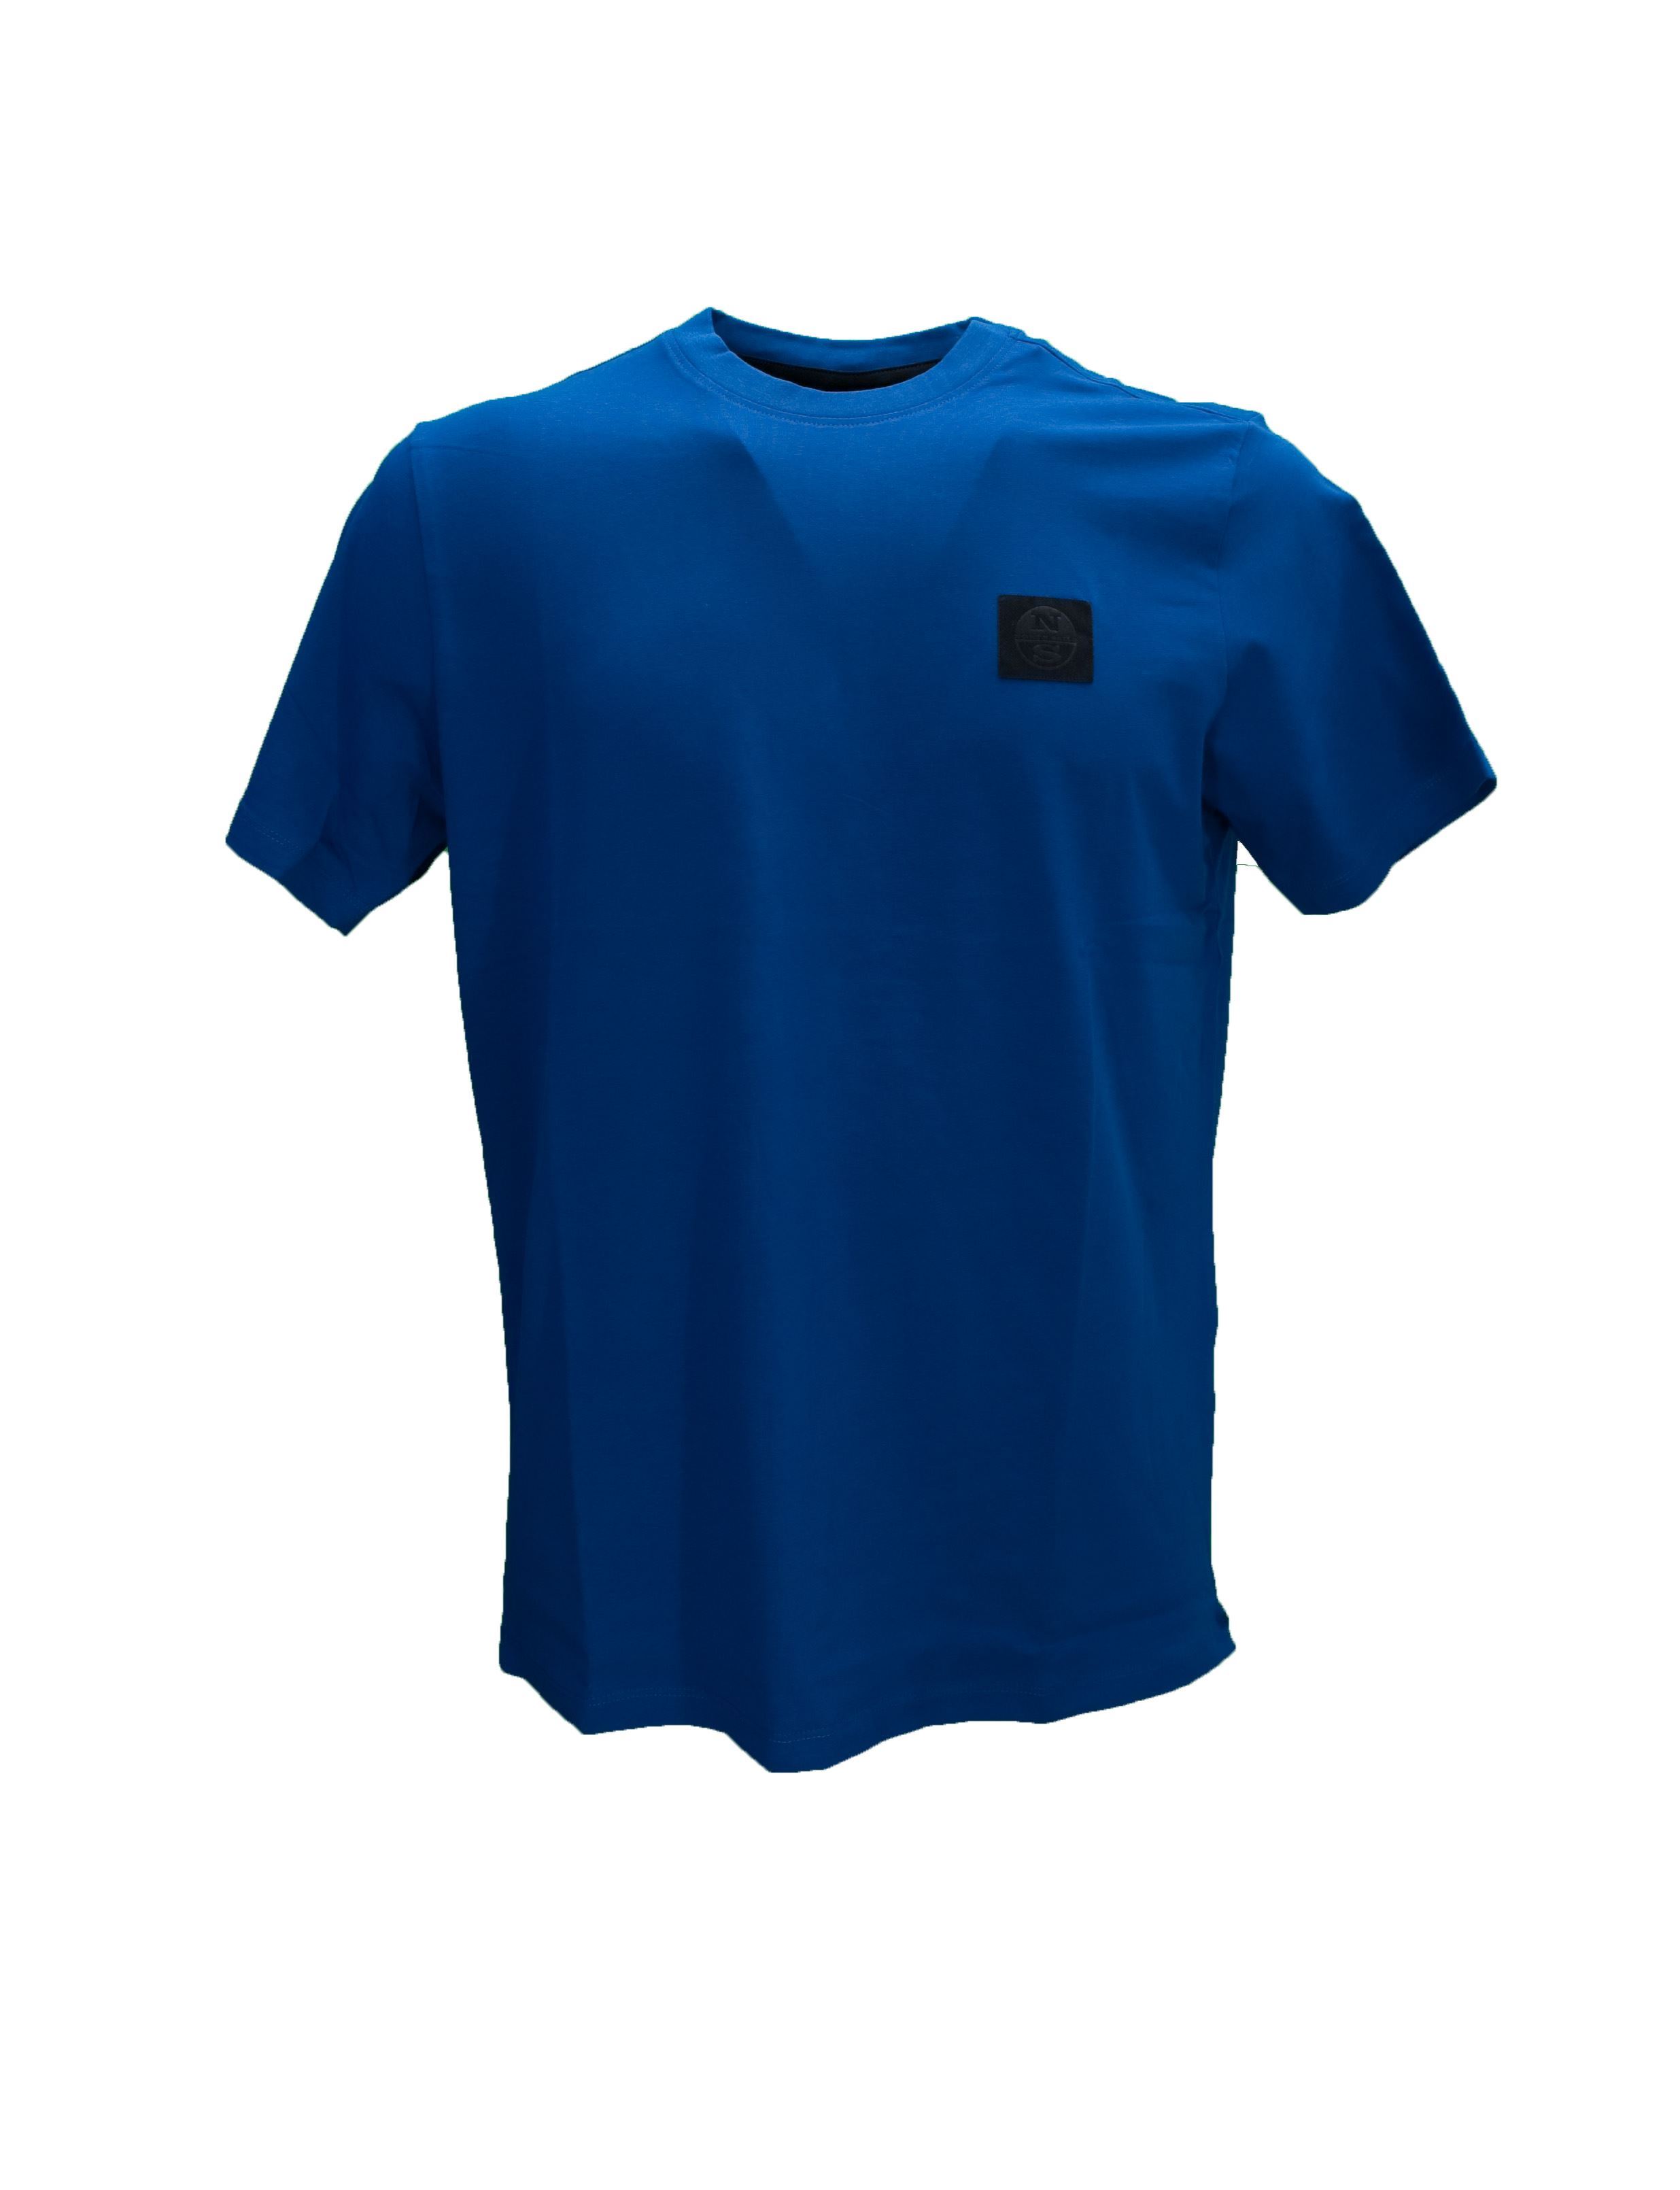 Immagine di T-Shirt base cotone azzurra